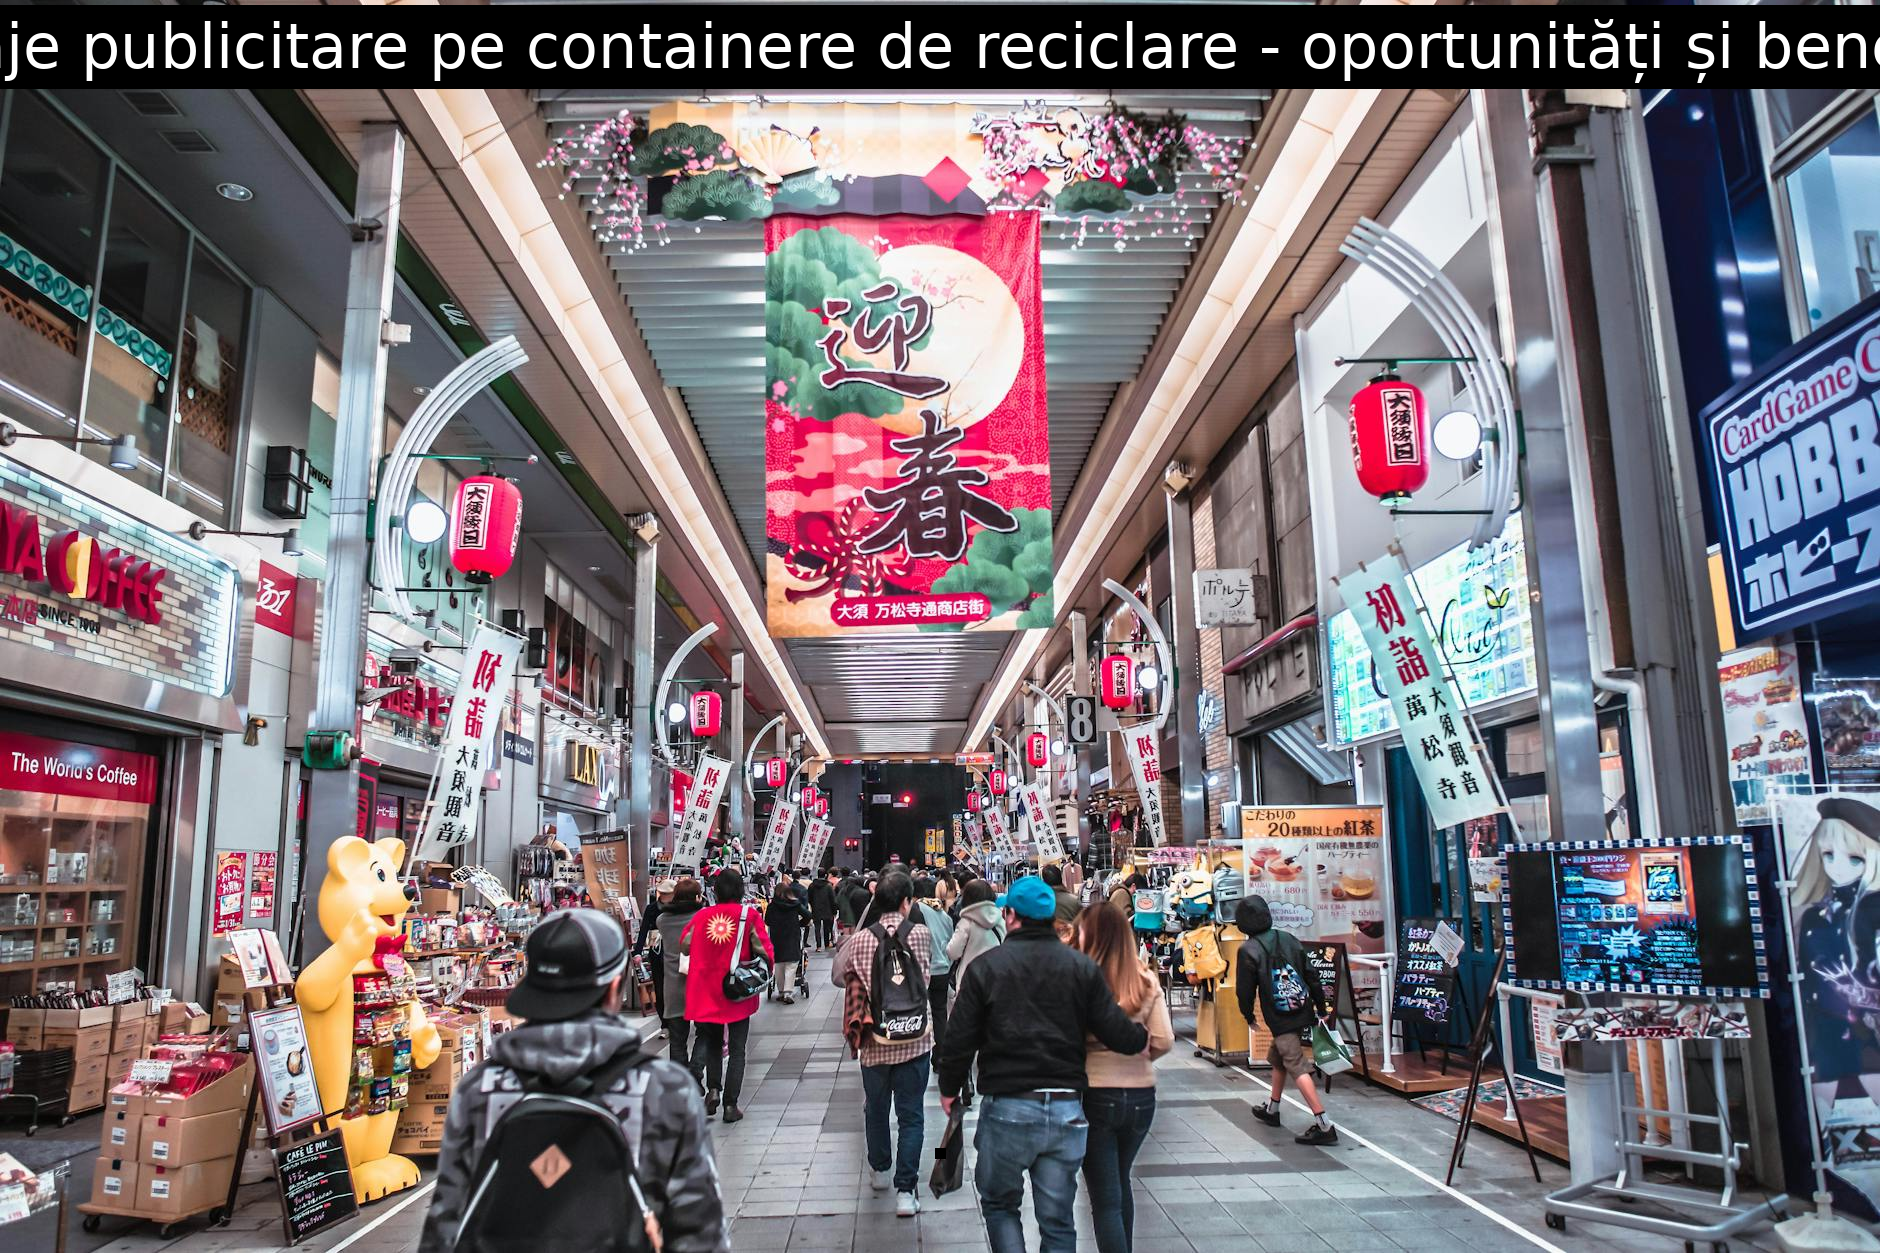 Mesaje publicitare pe containere de reciclare – oportunități și beneficii.